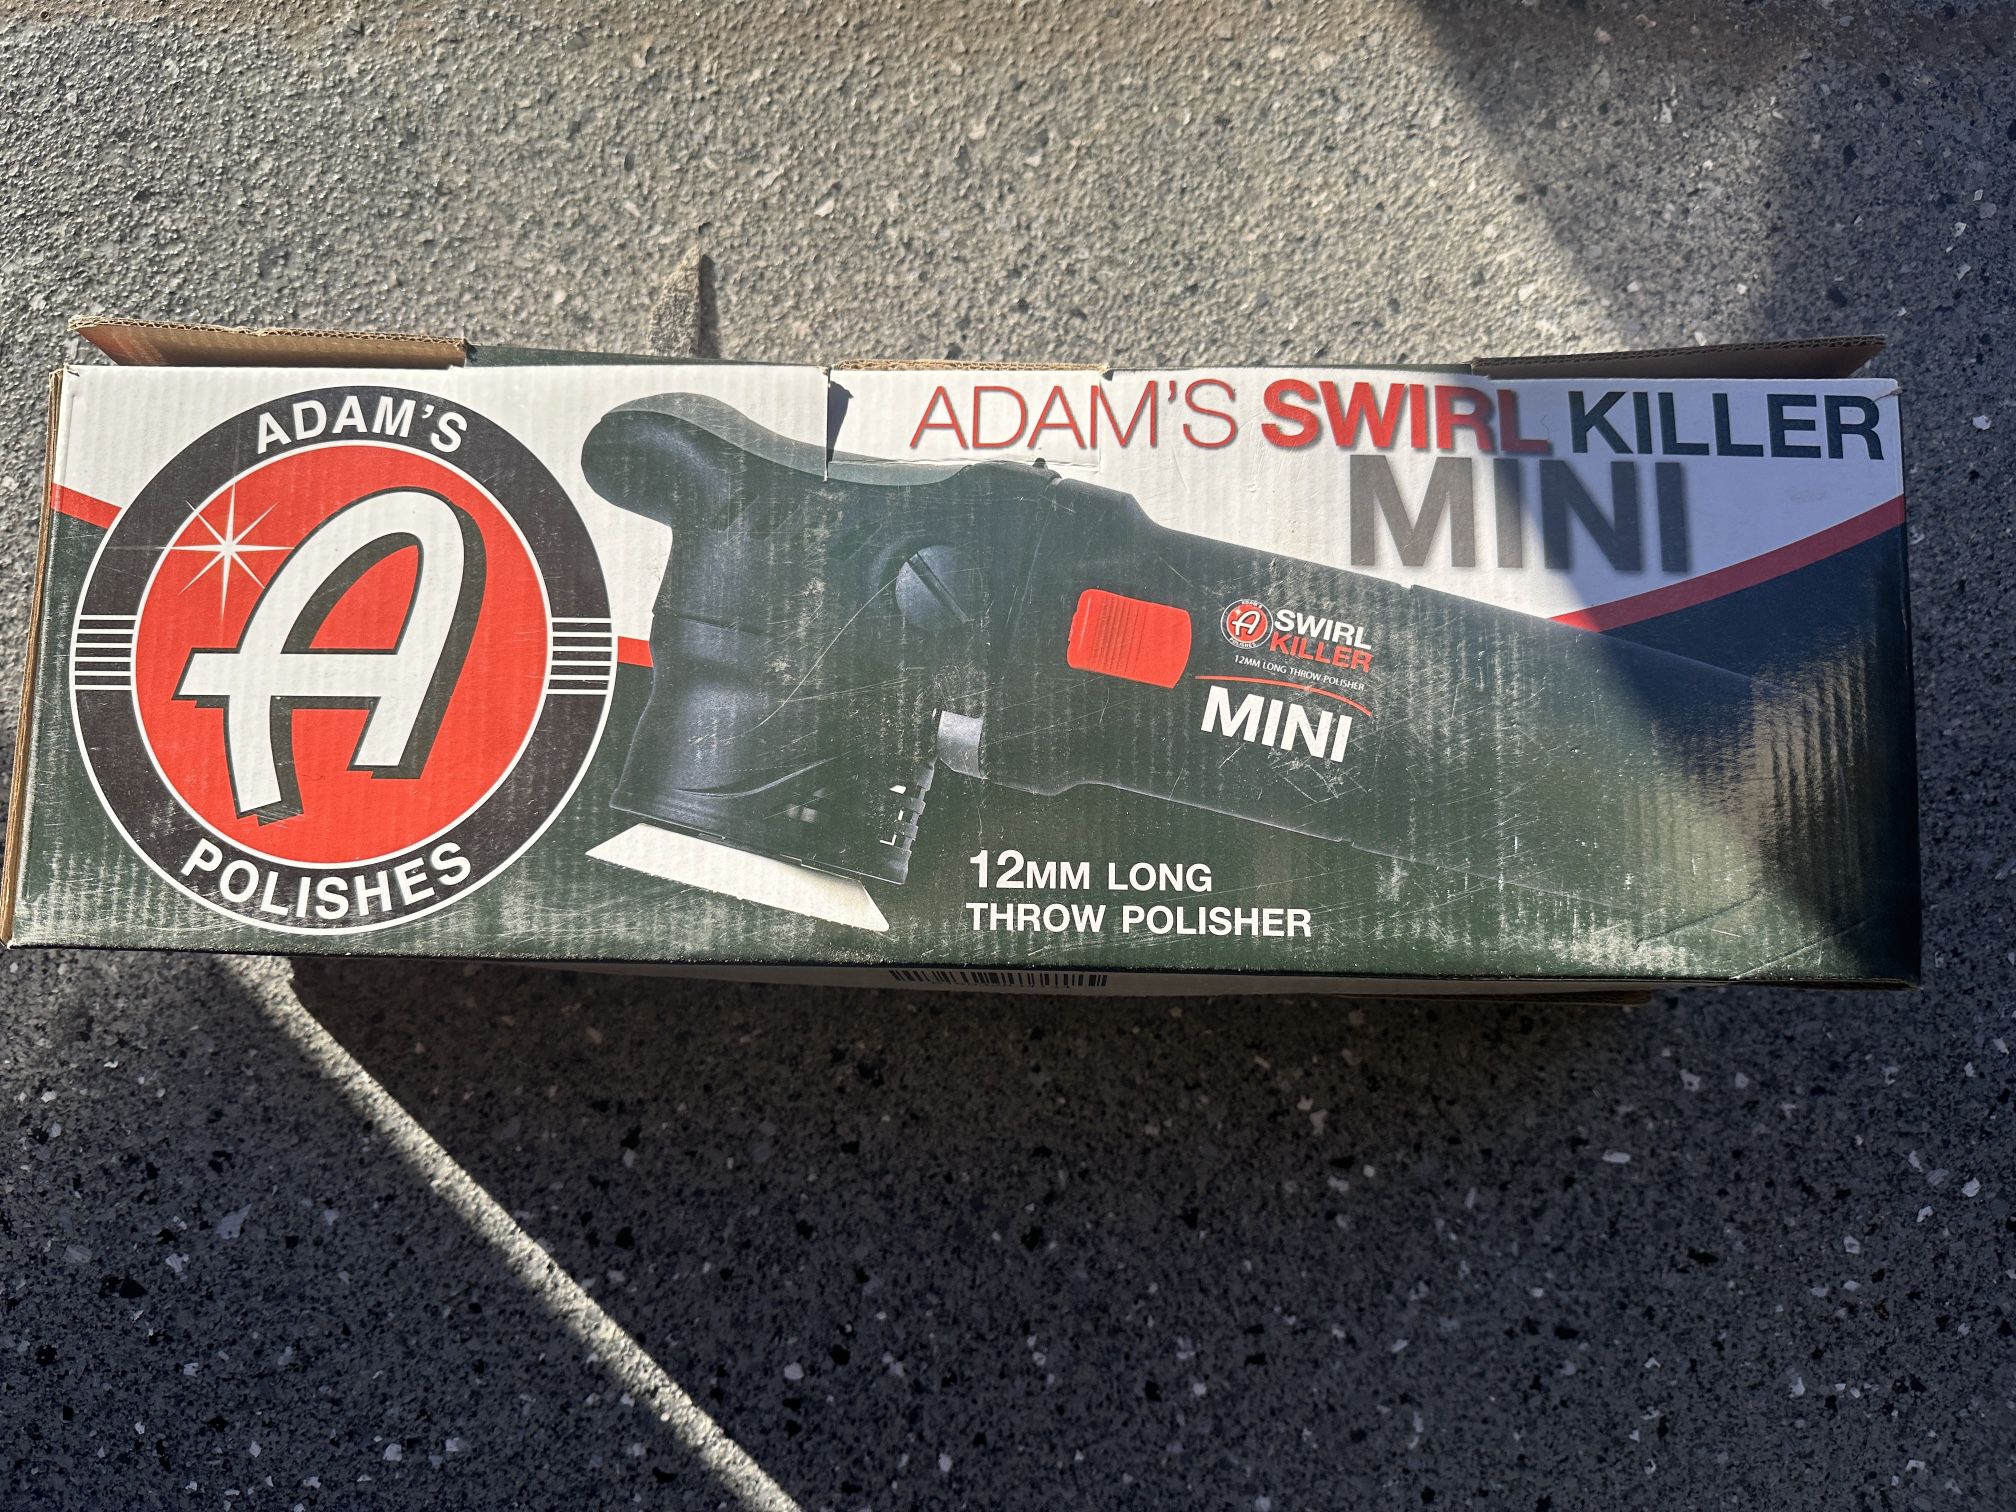 Adam's Swirl Killer MINI 12mm LT Polisher